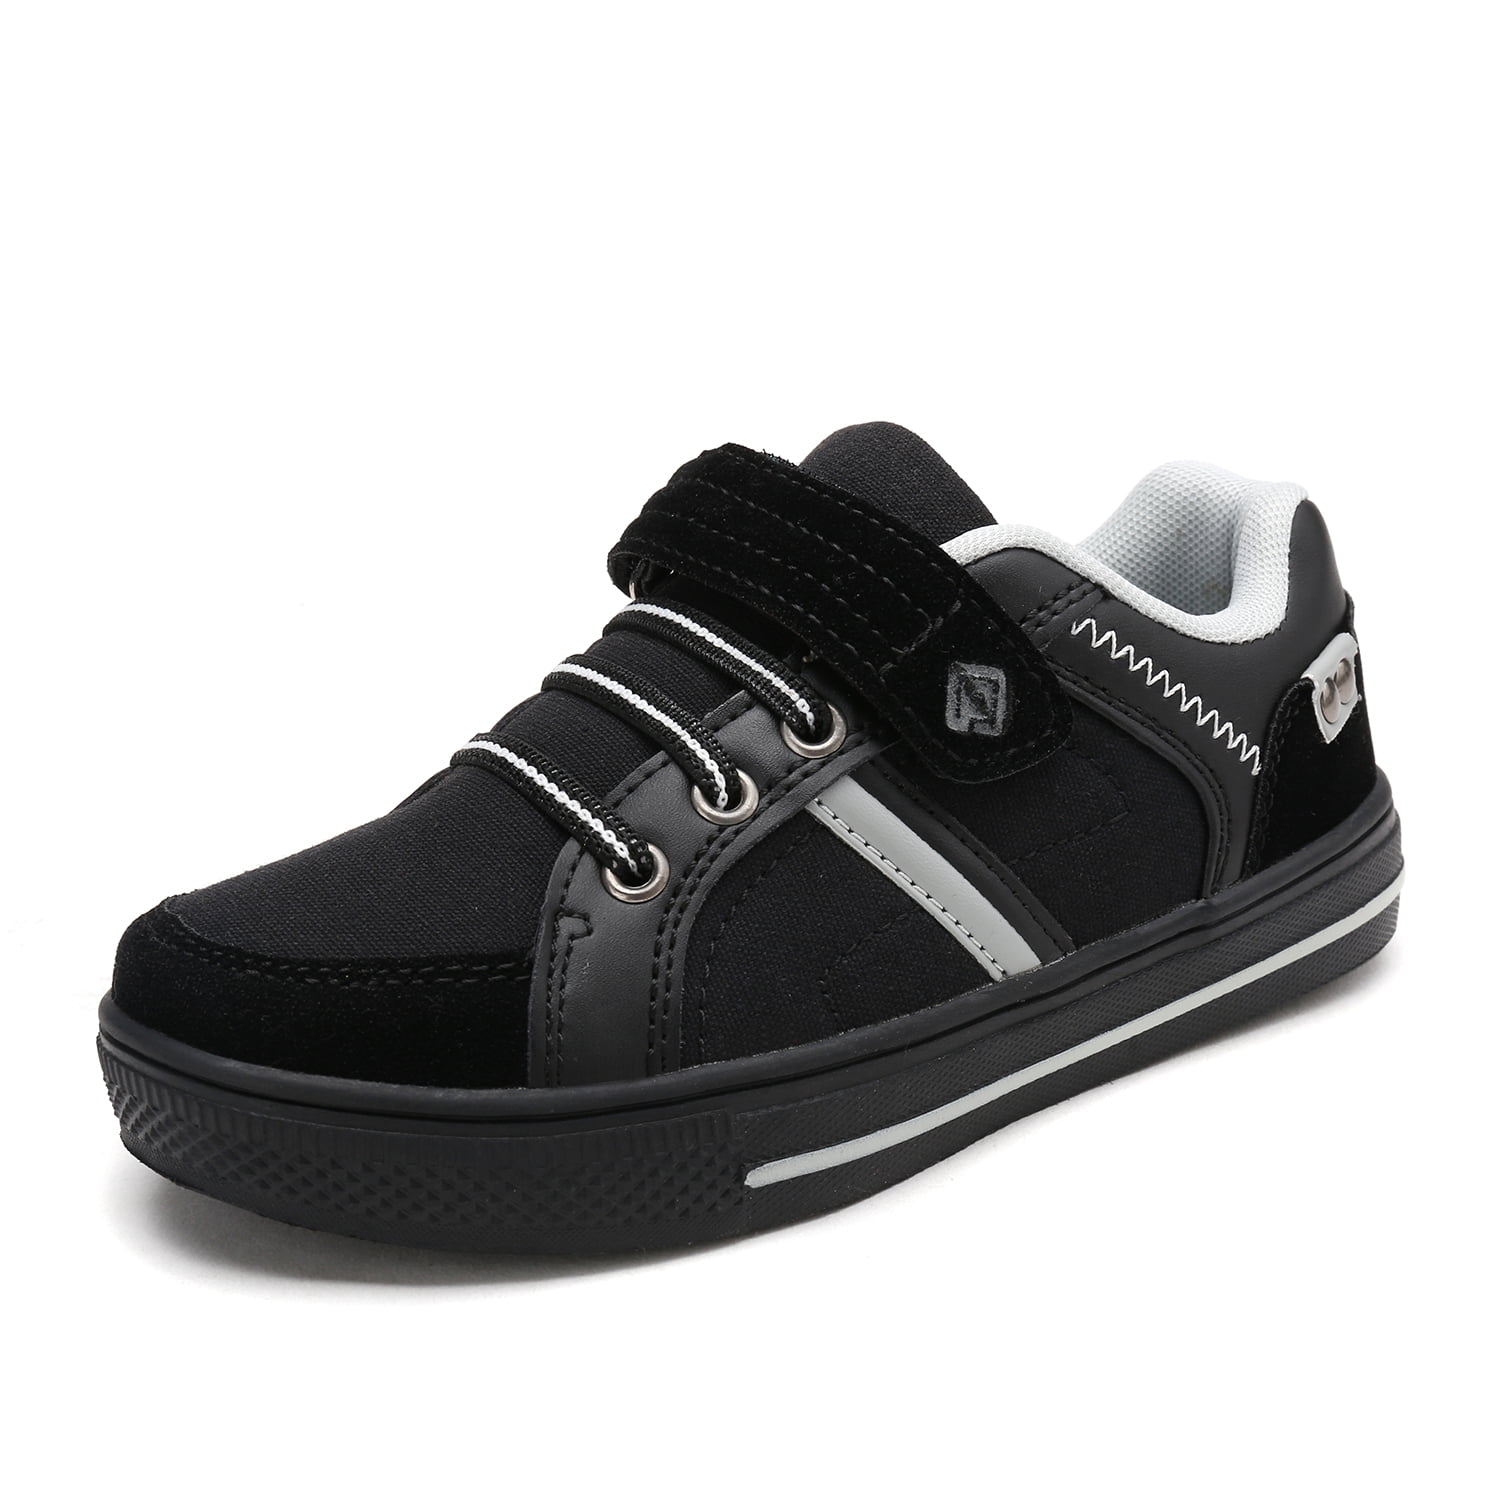 black school shoes size 9